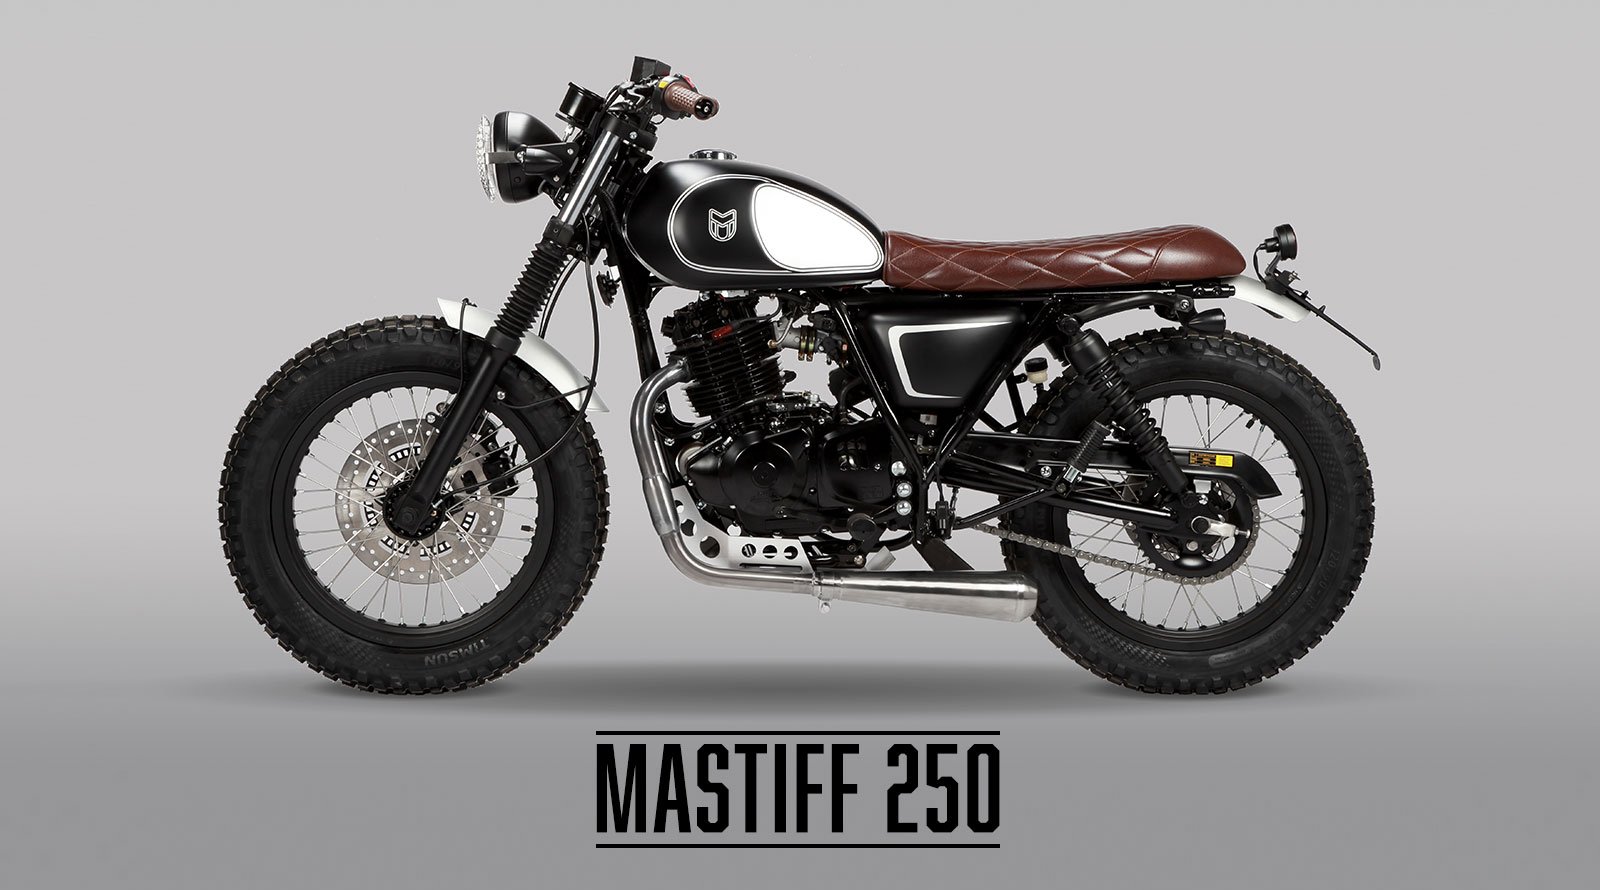 MASTIFF 250